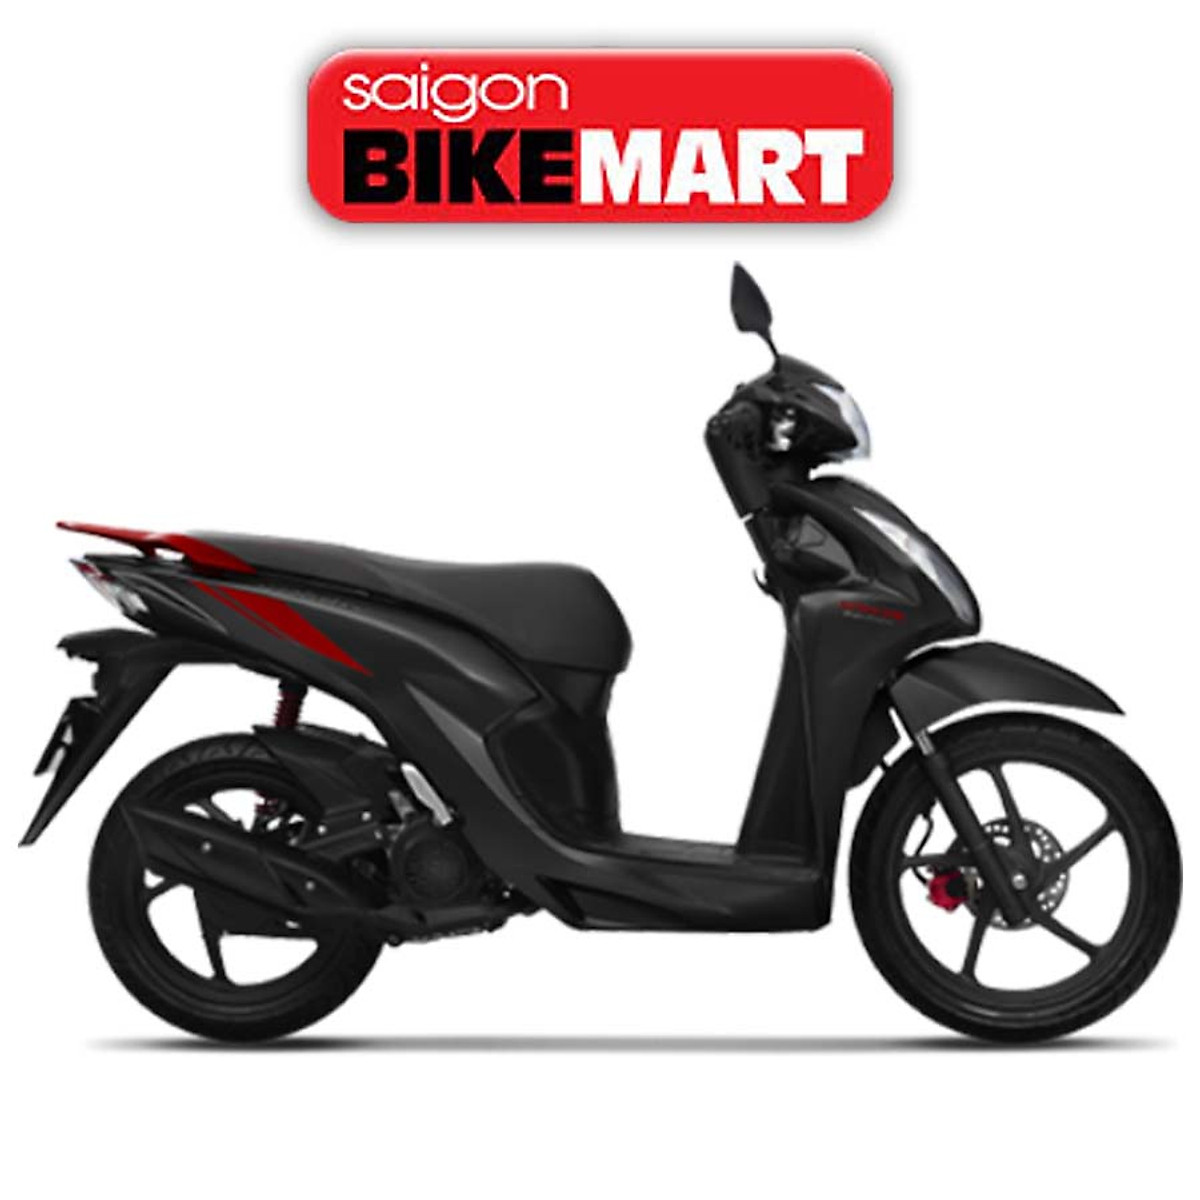 Mua Xe máy Honda Vision 2021 Cá Tính SMART Key  Đen Đỏ tại Sài Gòn  BikeMart